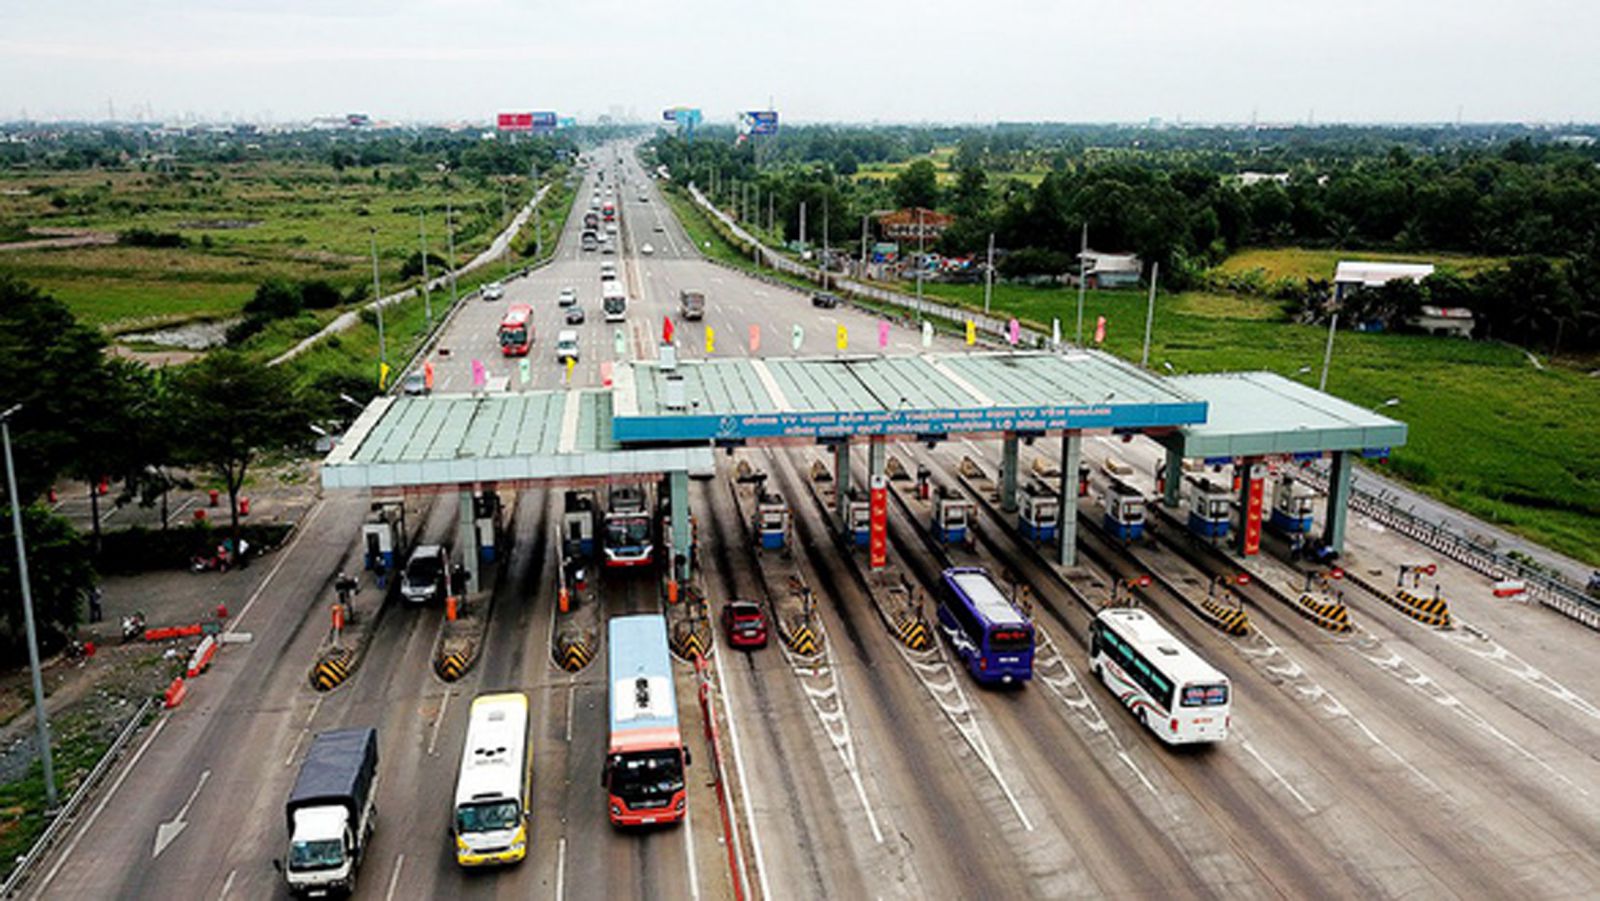  Sau khi tạm ngưng thu phí, lưu lượng xe trên tuyến cao tốc TP Hồ Chí Minh - Trung Lương này tăng đột biến gây lãng phí một nguồn lực lớn.